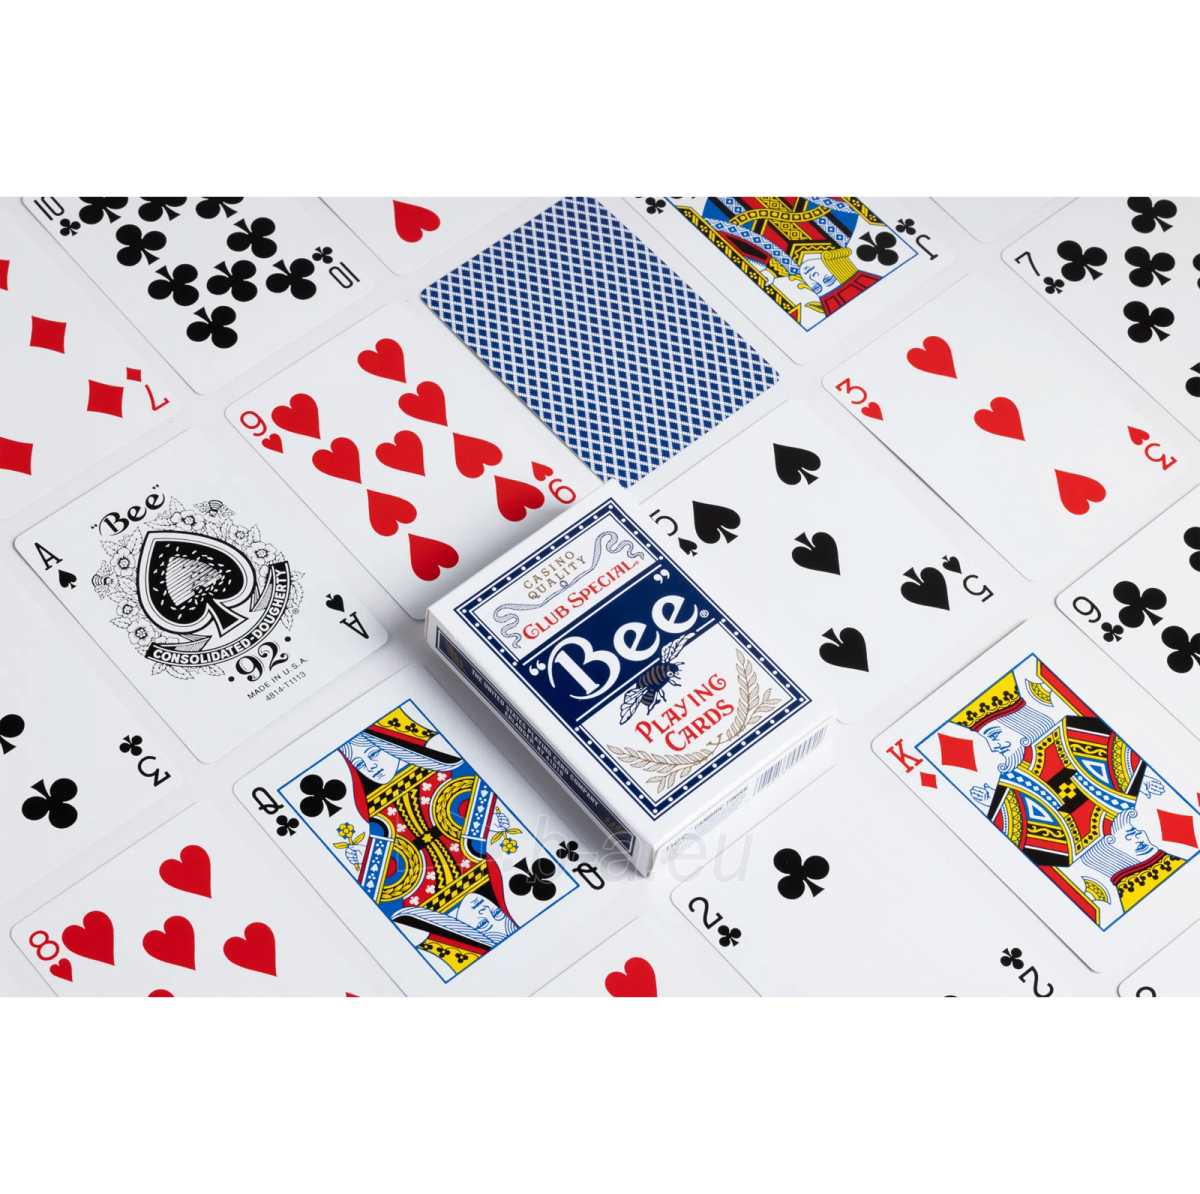 Bee Standard pokerio kortos (Mėlynos) paveikslėlis 5 iš 5